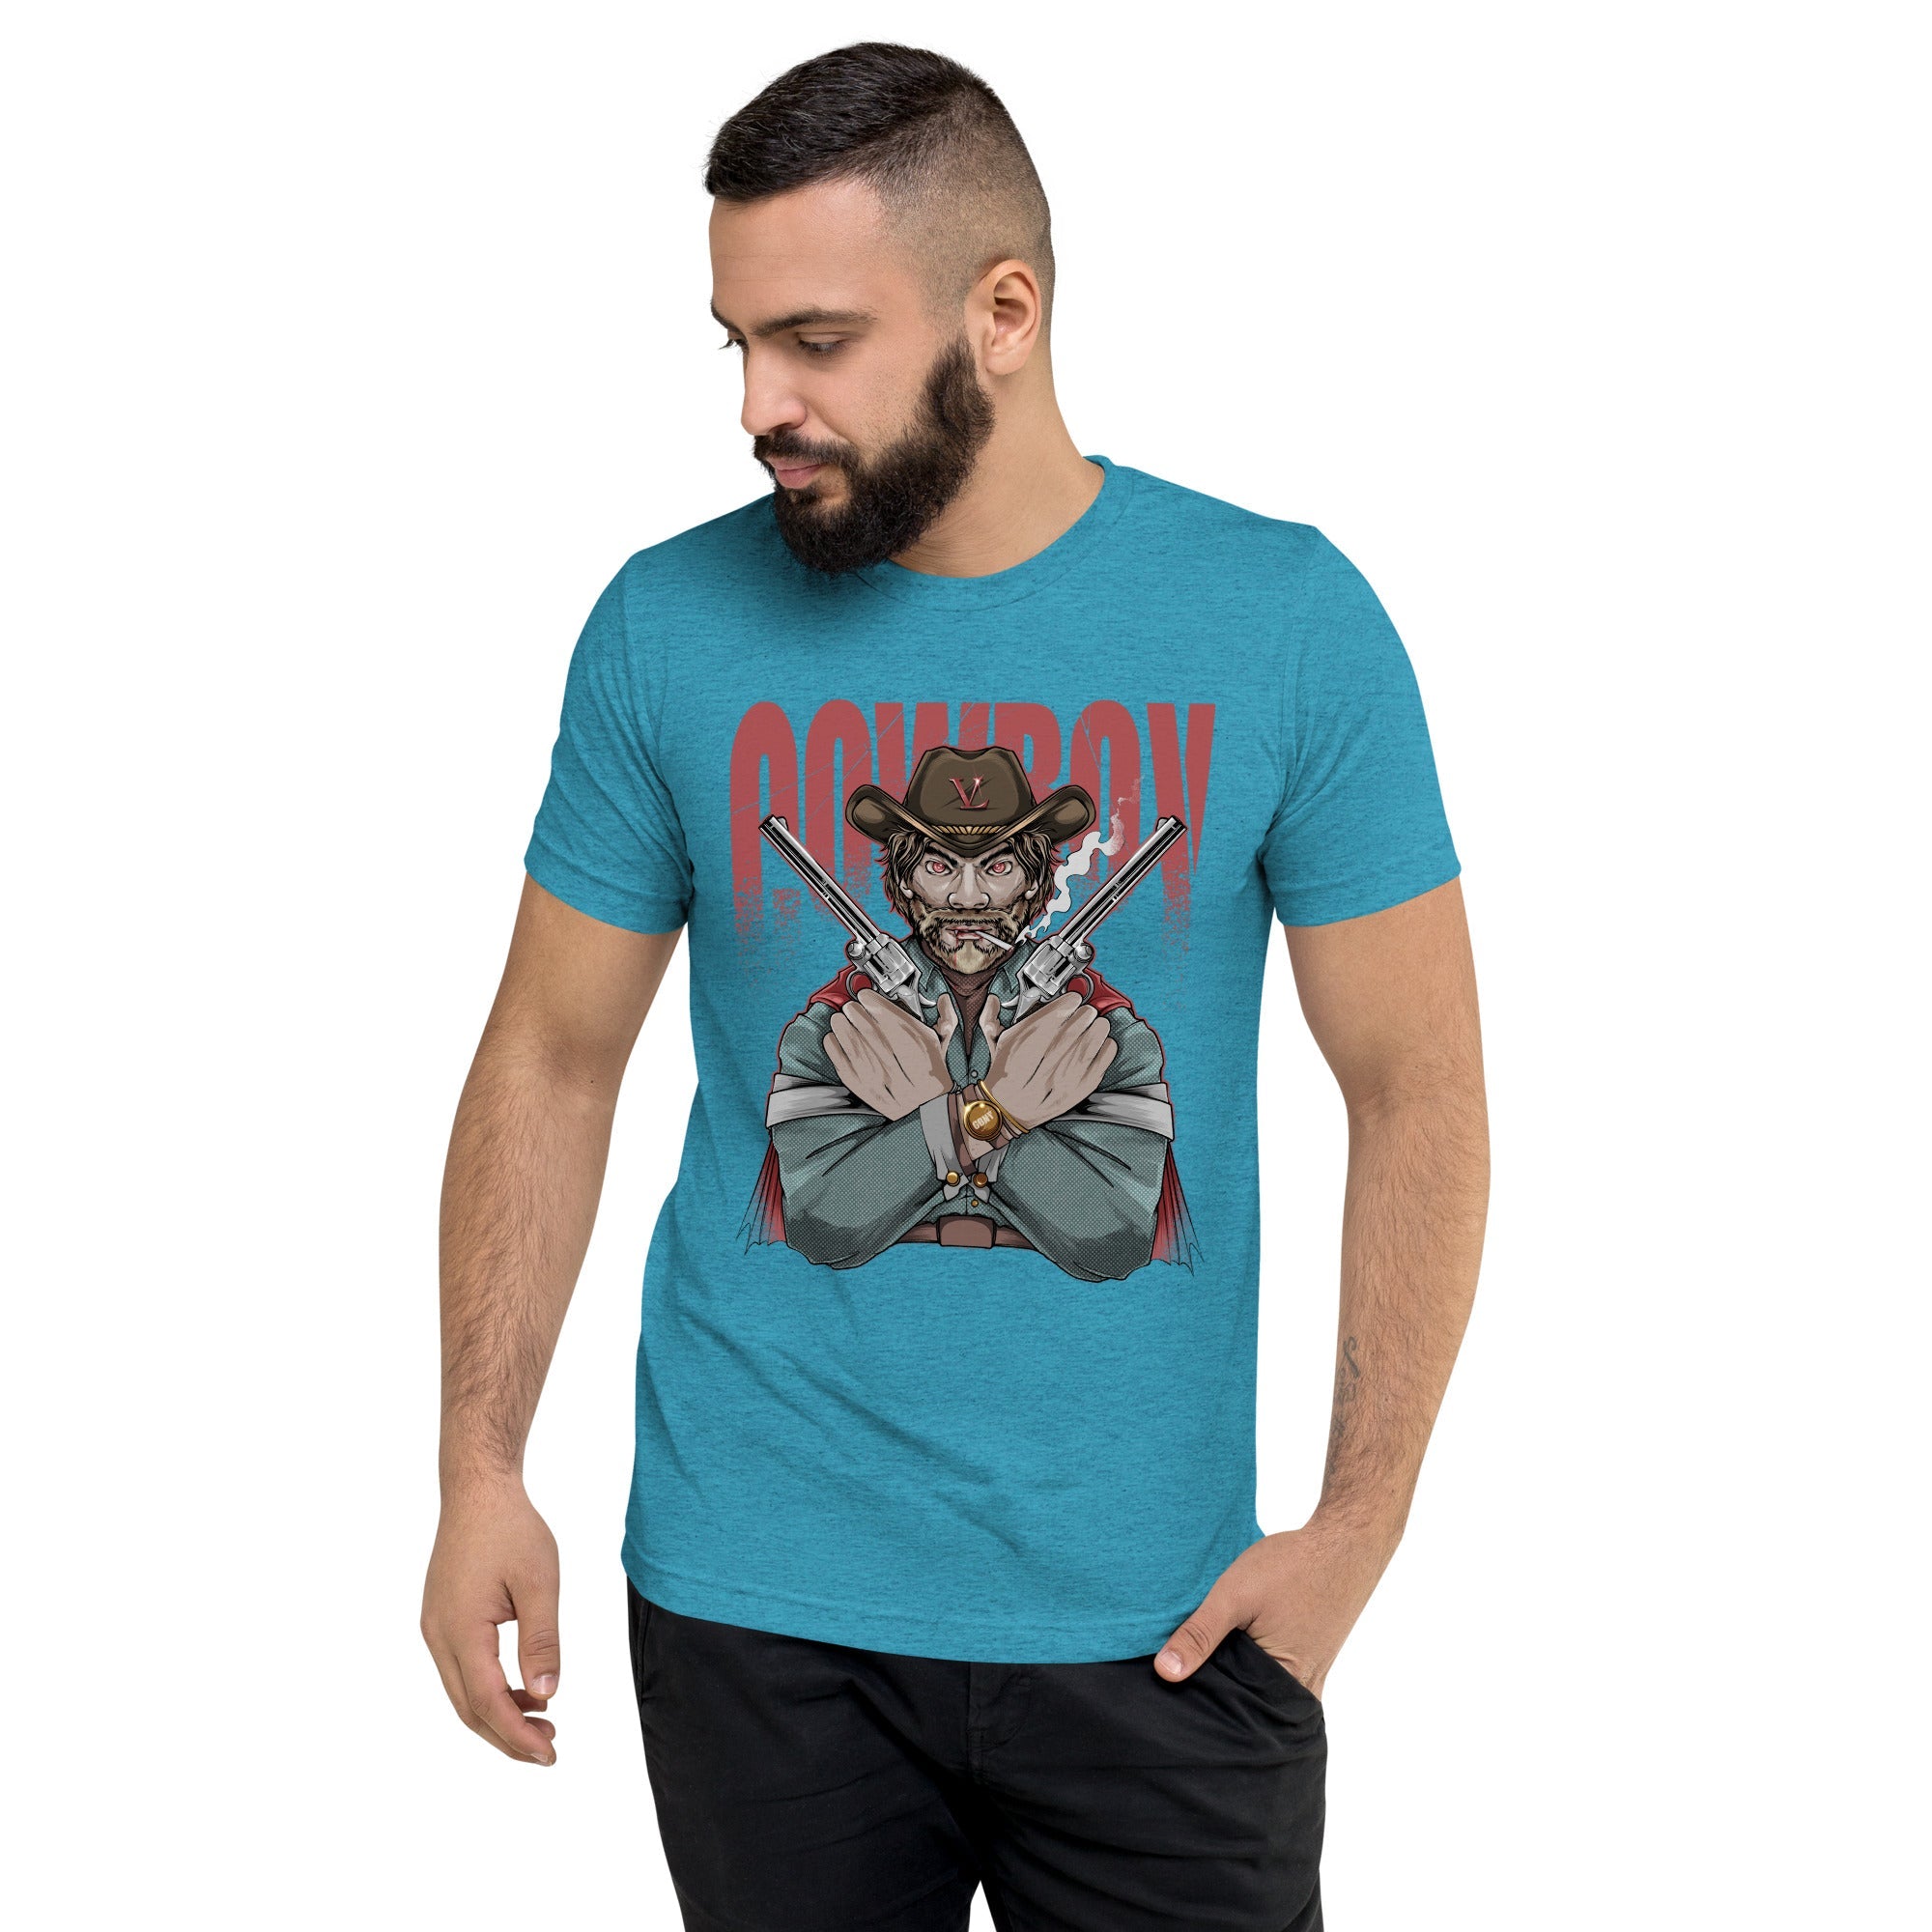 GBNY Aqua Triblend / XS Vamp Life X GBNY "Cow Boy" T-shirt - Men's 2714713_6464